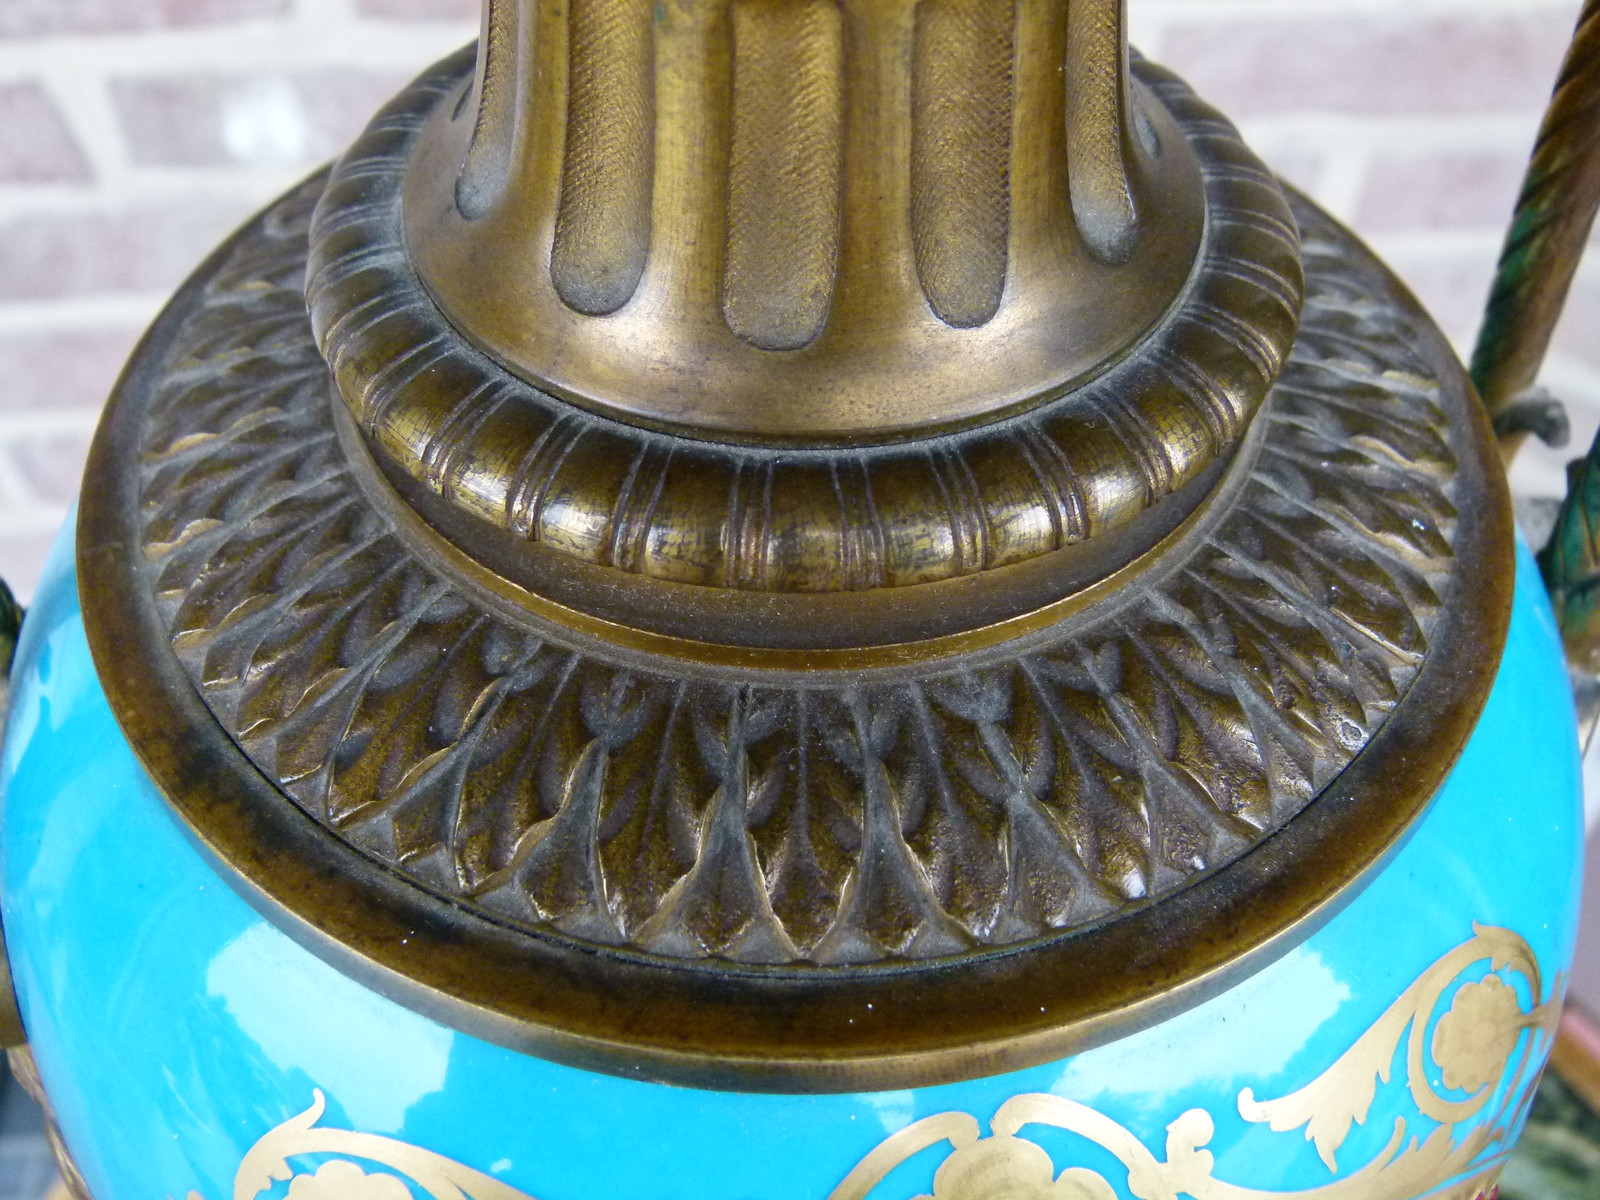 Louis 16 Oil lamp with Sévres porcelain